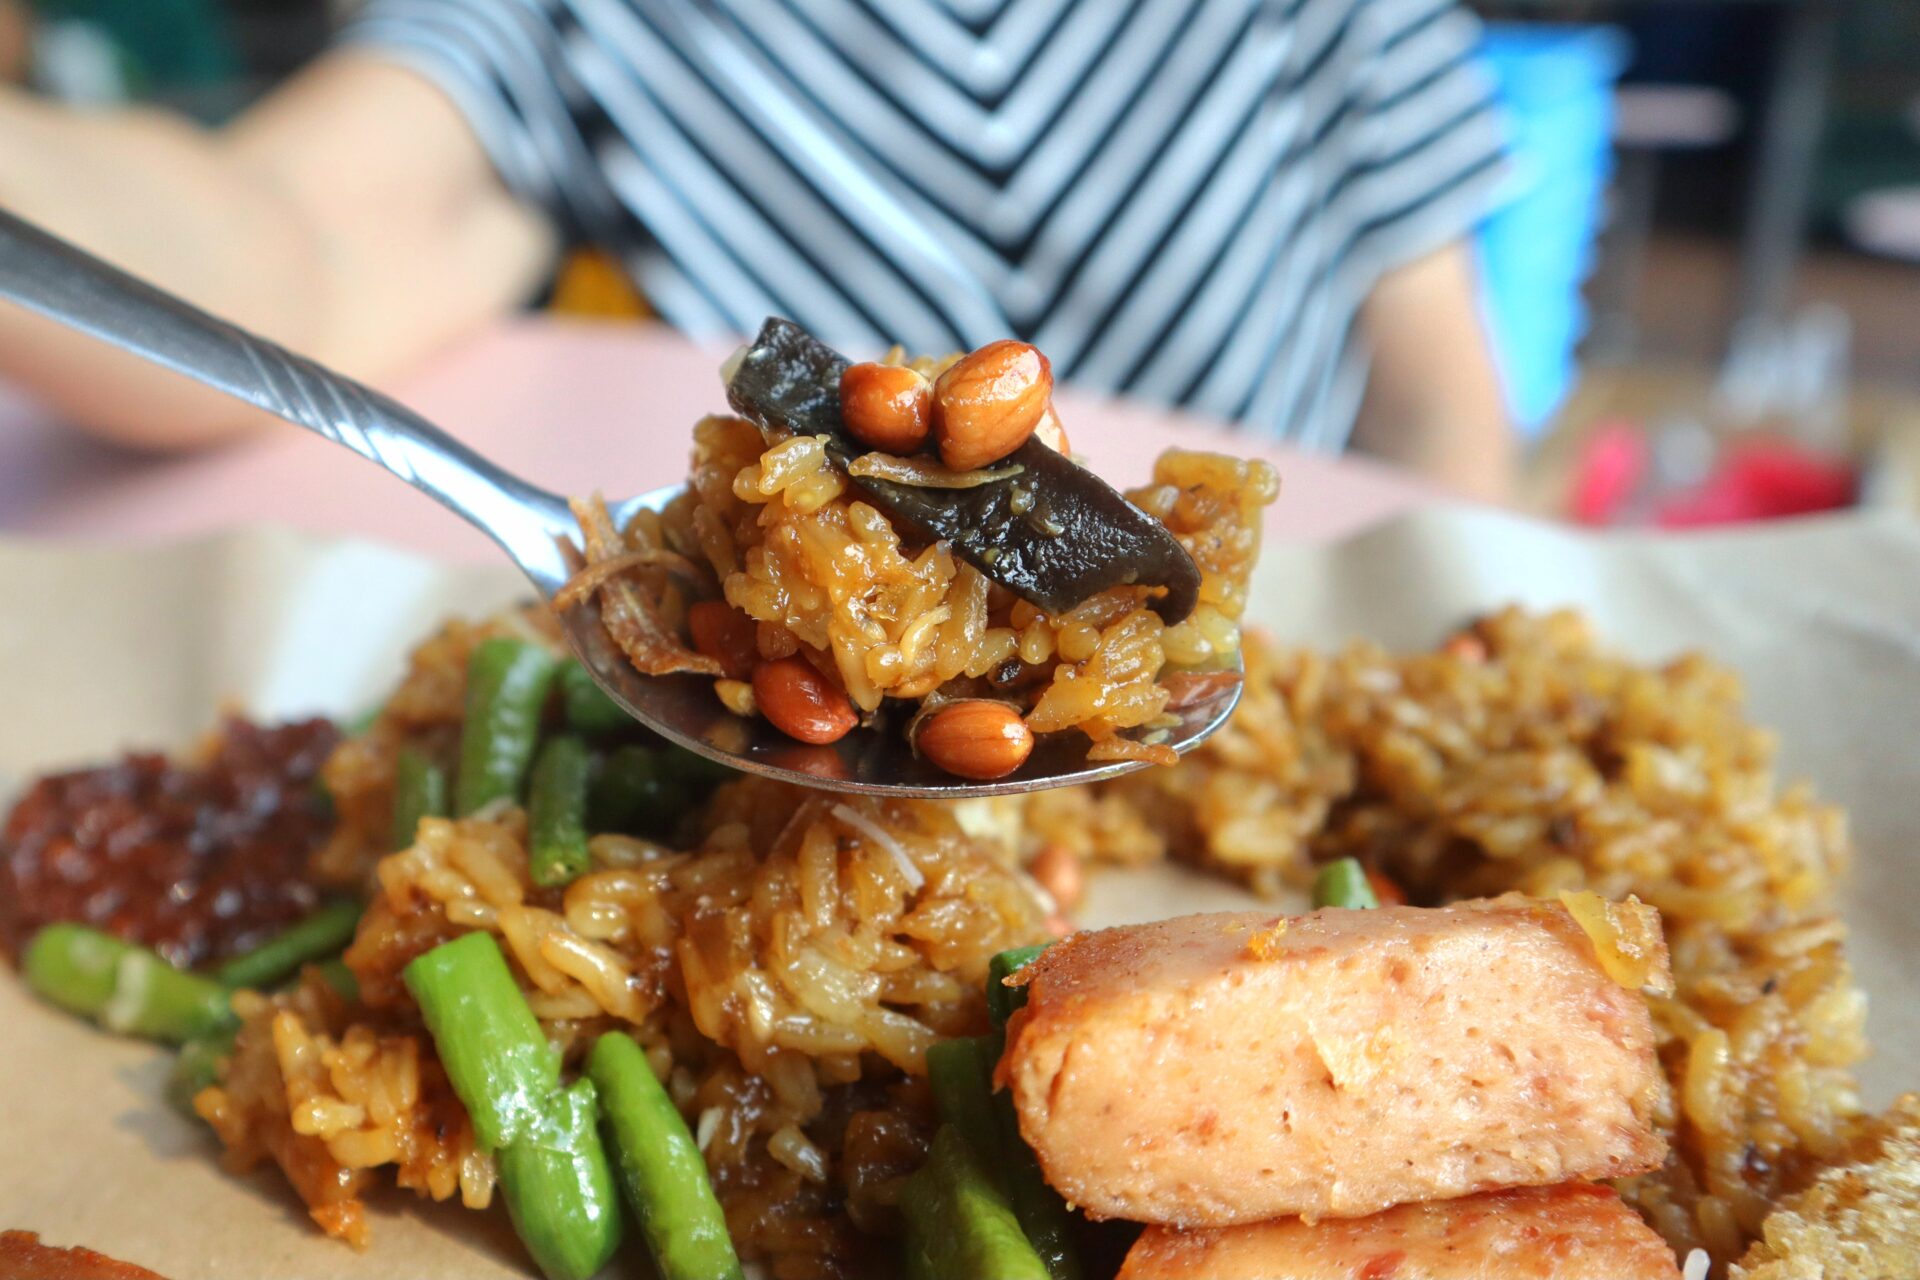 Chong boon market - glutinious rice